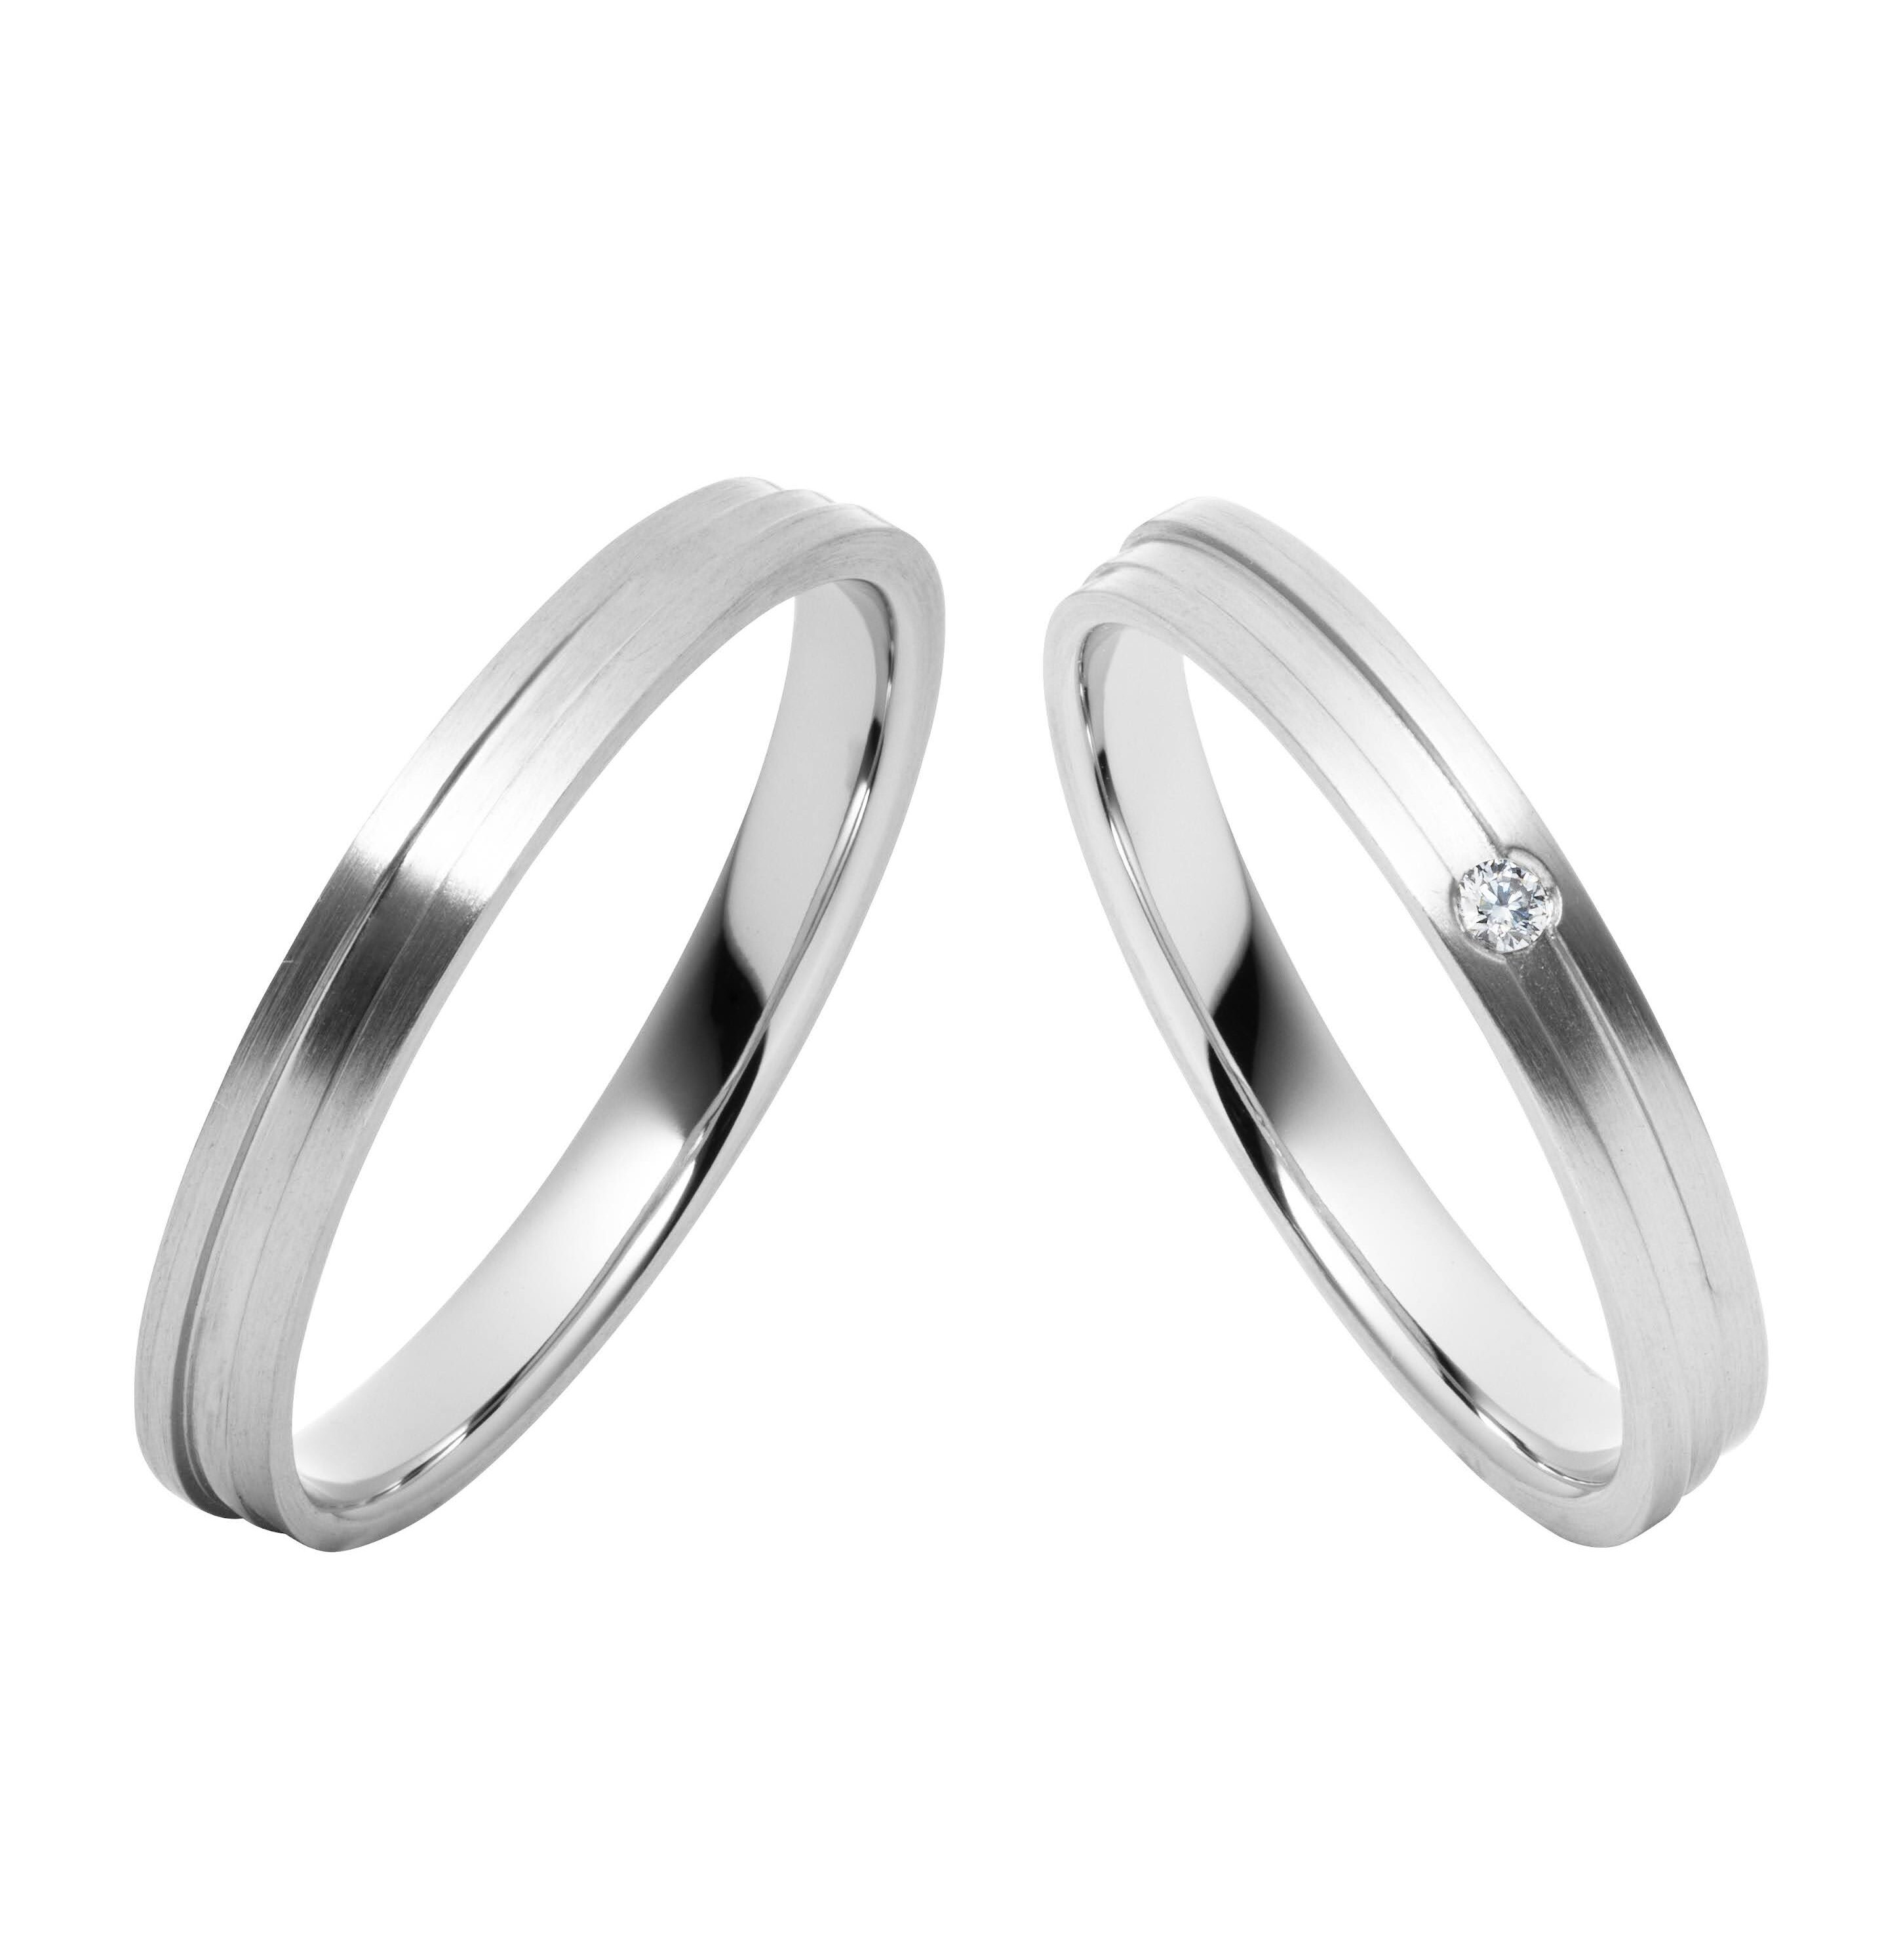 シンプル,個性的 結婚指輪のディスプロポーション